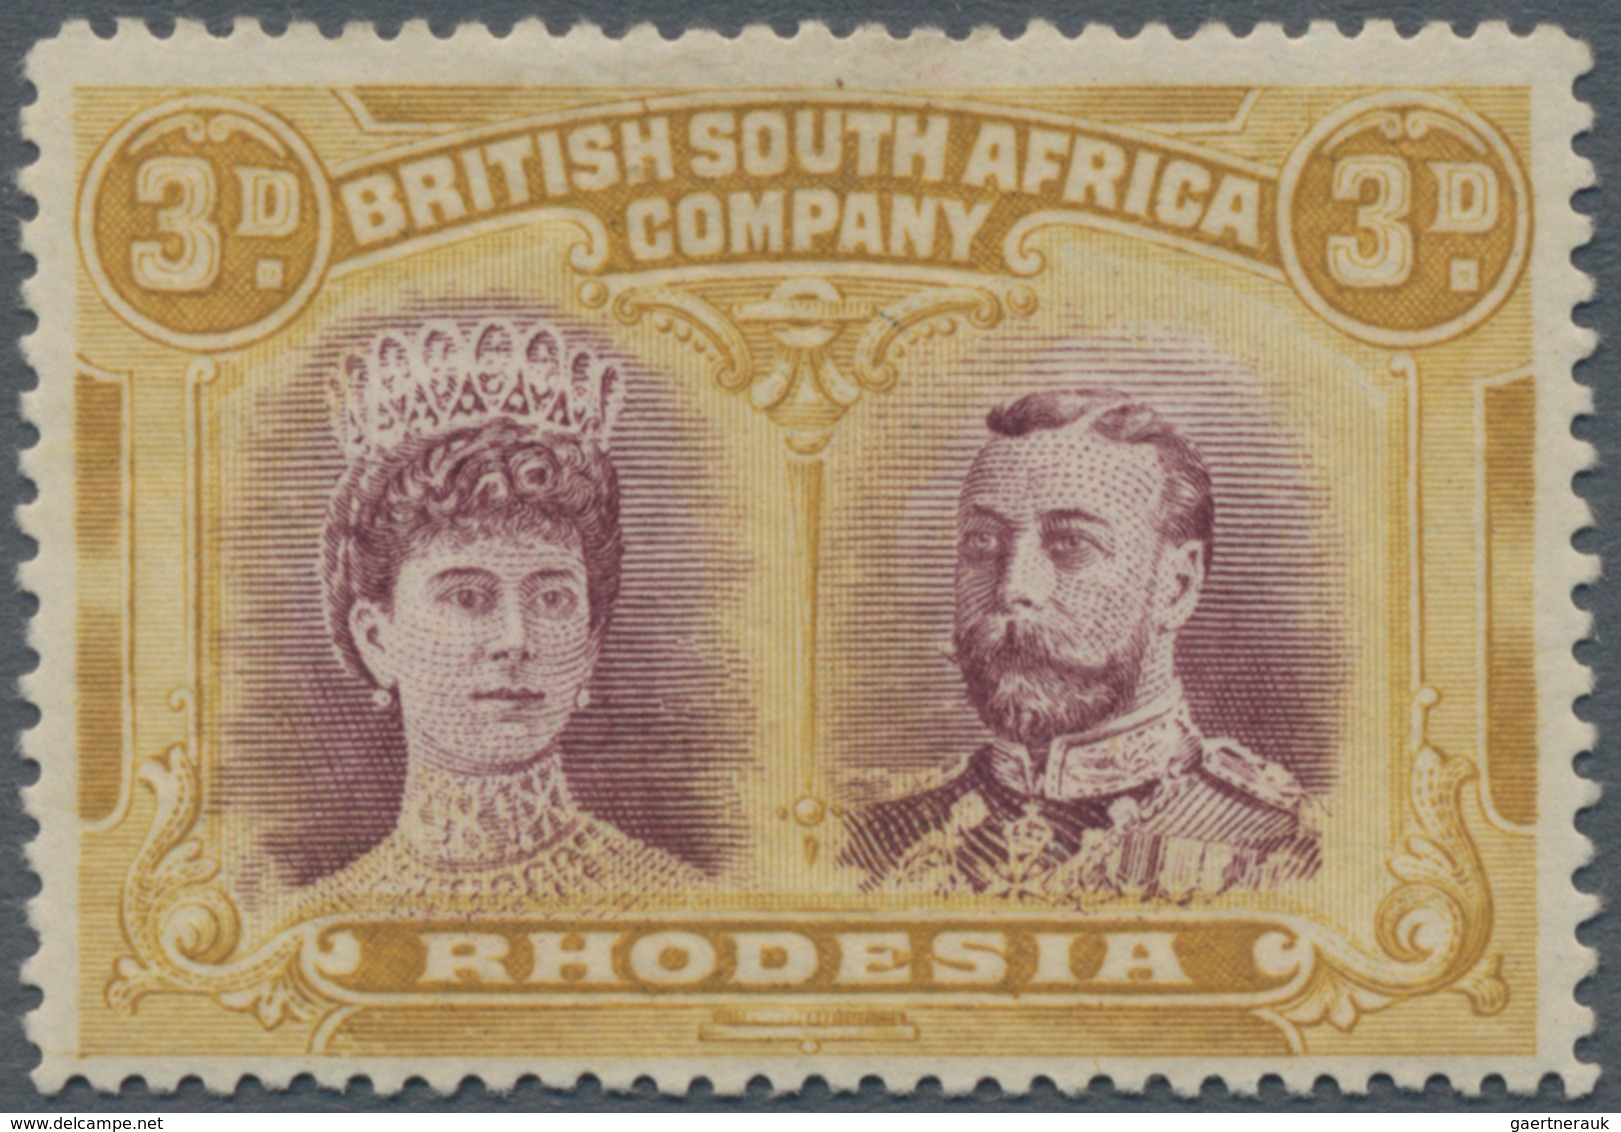 Britische Südafrika-Gesellschaft: 1910-13 'Double Head' 3d. Claret & Pale Yellow-ochre, PERFORATED 1 - Non Classés